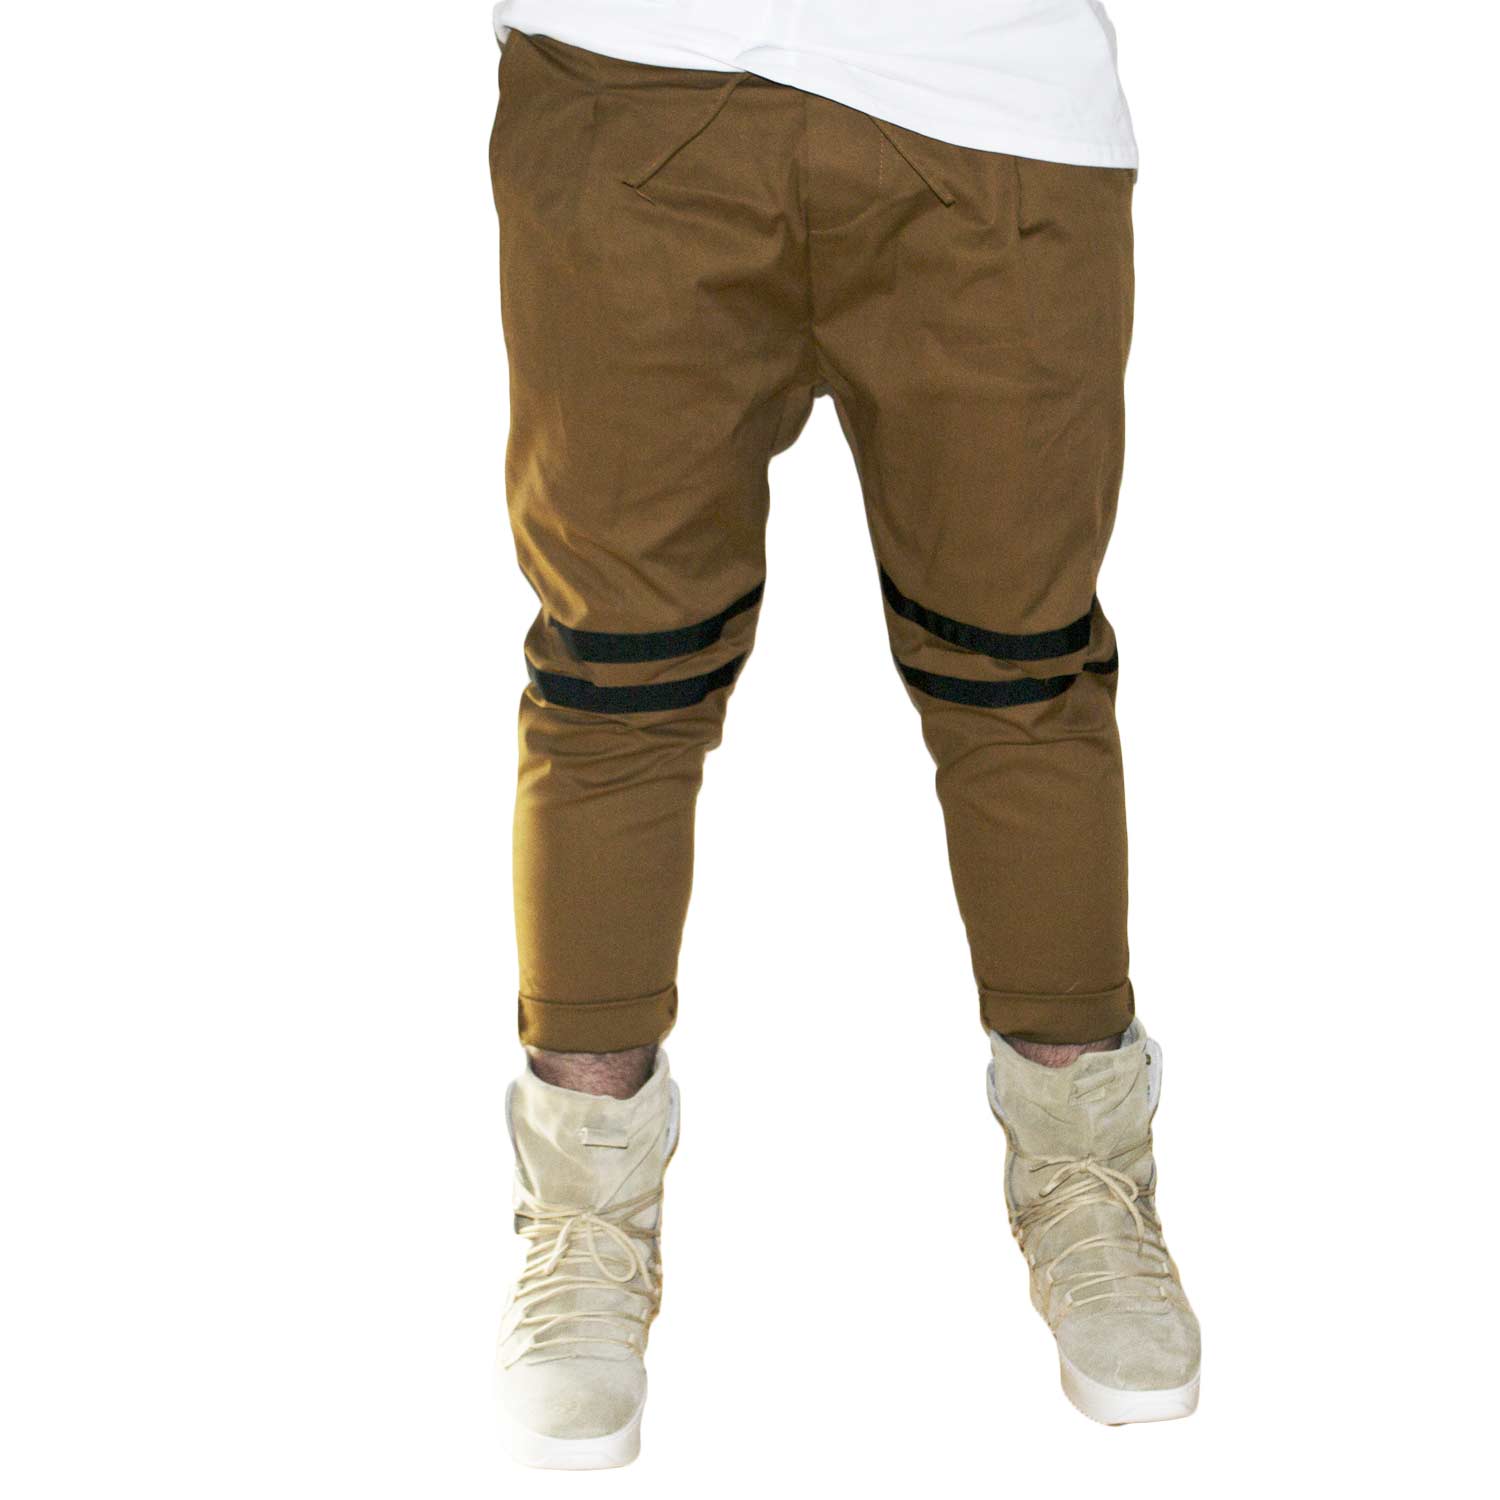 Pantaloni jogger marroni con elastico e coulisse e tasche laterali strappi sul ginocchio striscia nera moda giovane